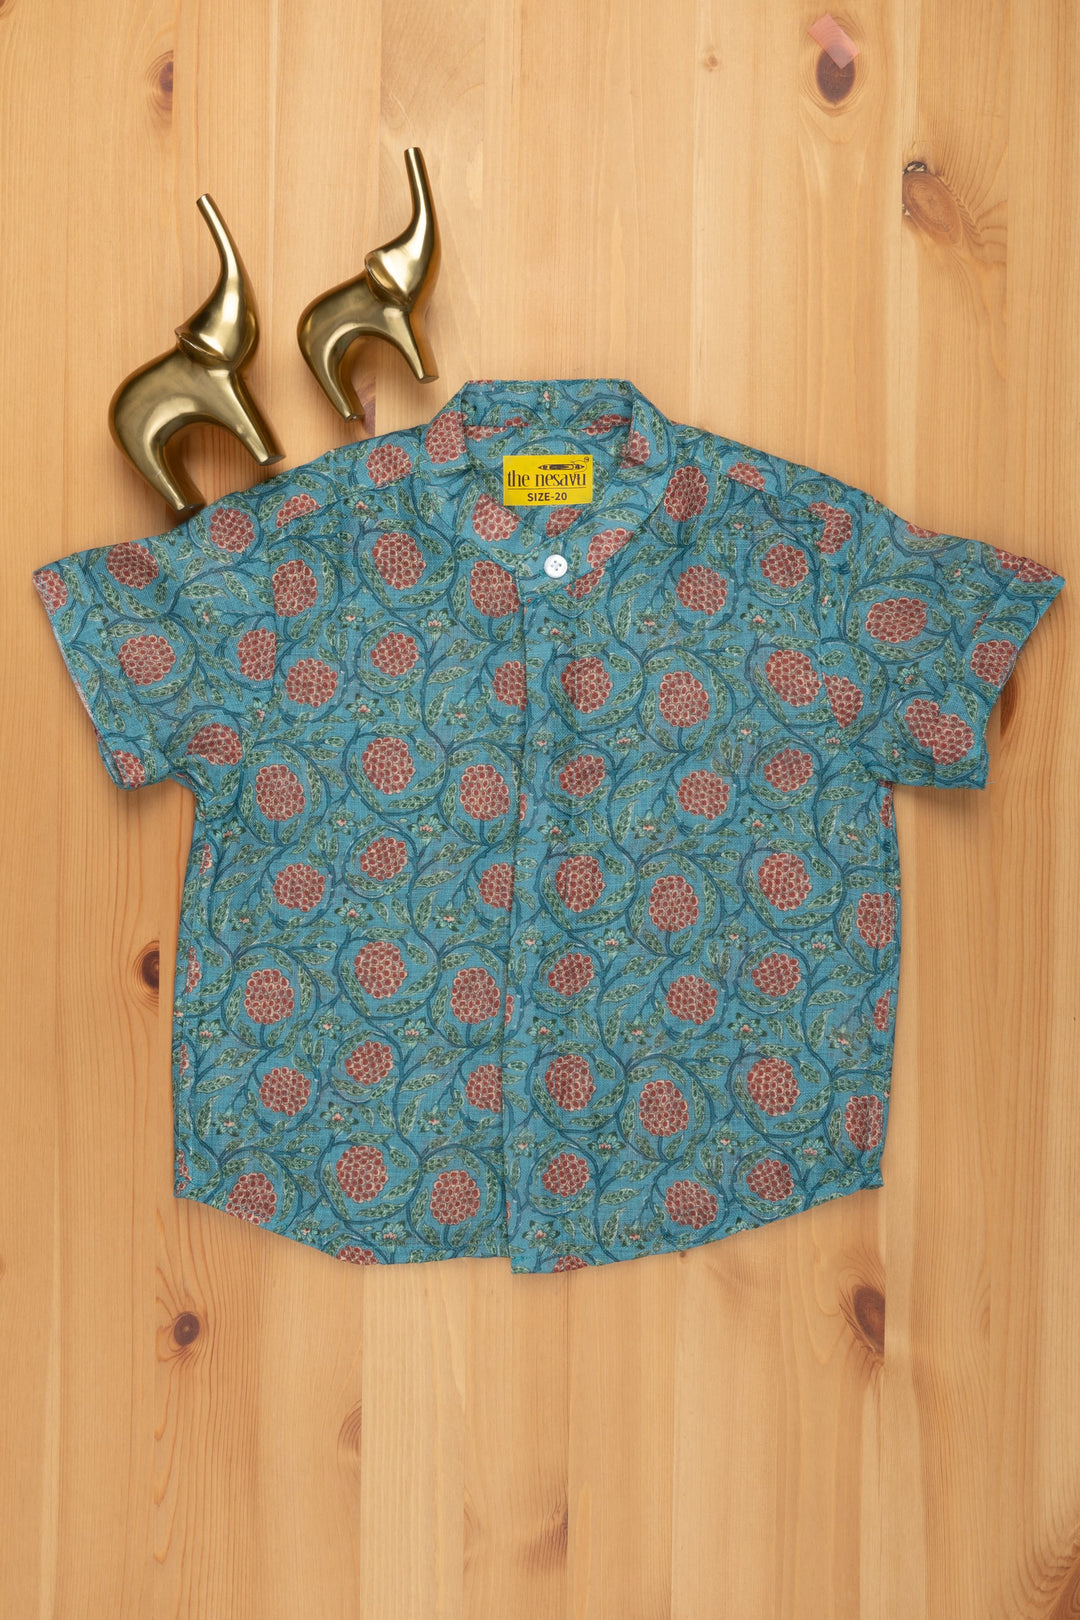 The Nesavu Boys Linen Shirt Breezy Blooms: Floral Print Linen Boys' Shirt for Effortless Style Nesavu 14 (6M) / Blue / Linen BS050 Floral Print Linen Boys Shirt | Casual Shirt Boys | The Nesavu